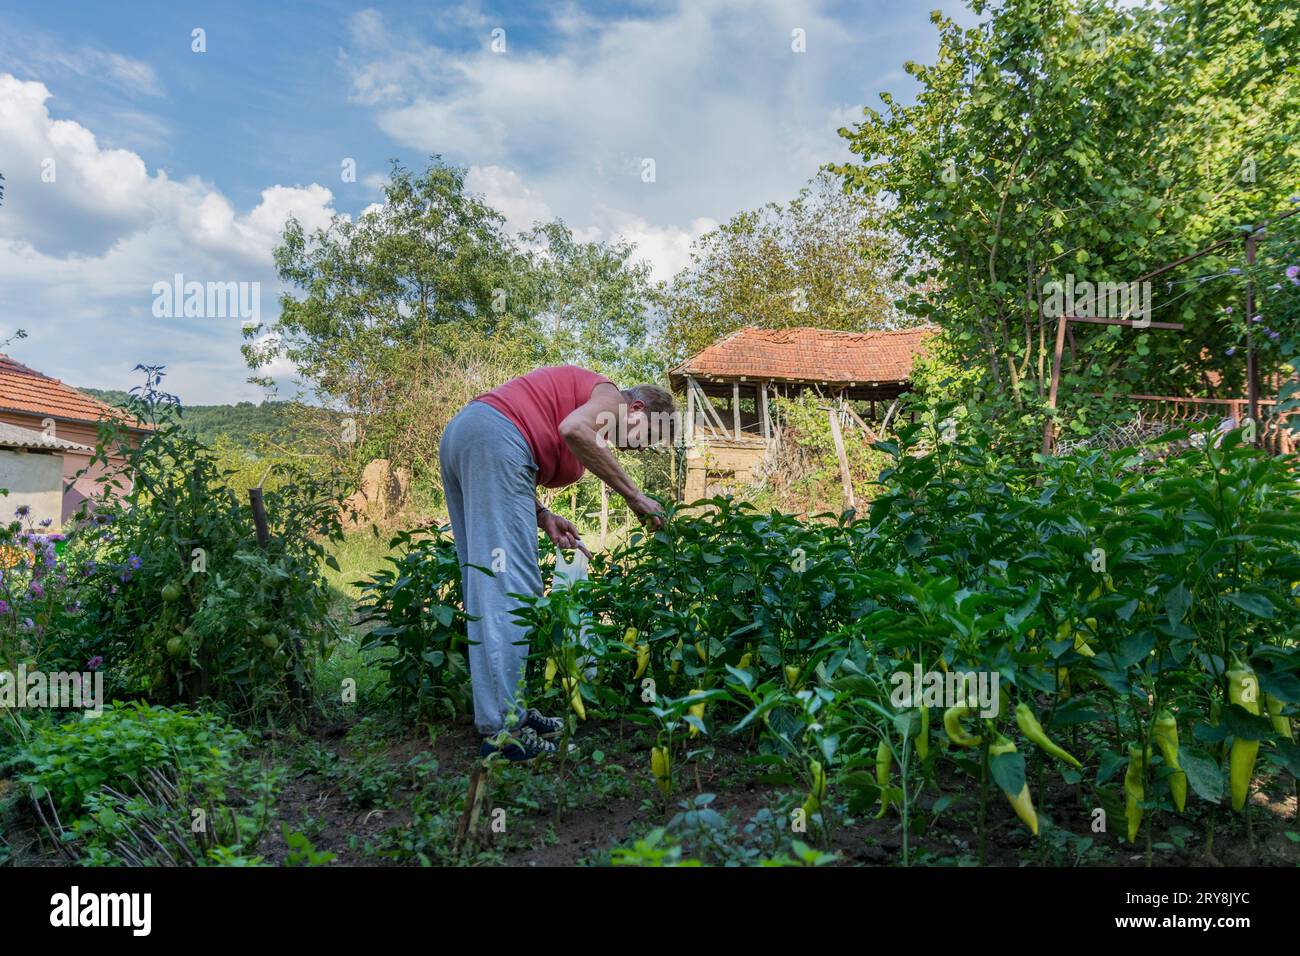 Une femme cueillant des poivrons à la main dans le jardin de campagne ensoleillé un jour d'été. Les poivrons sont cultivés de manière biologique. Concept agricole Banque D'Images